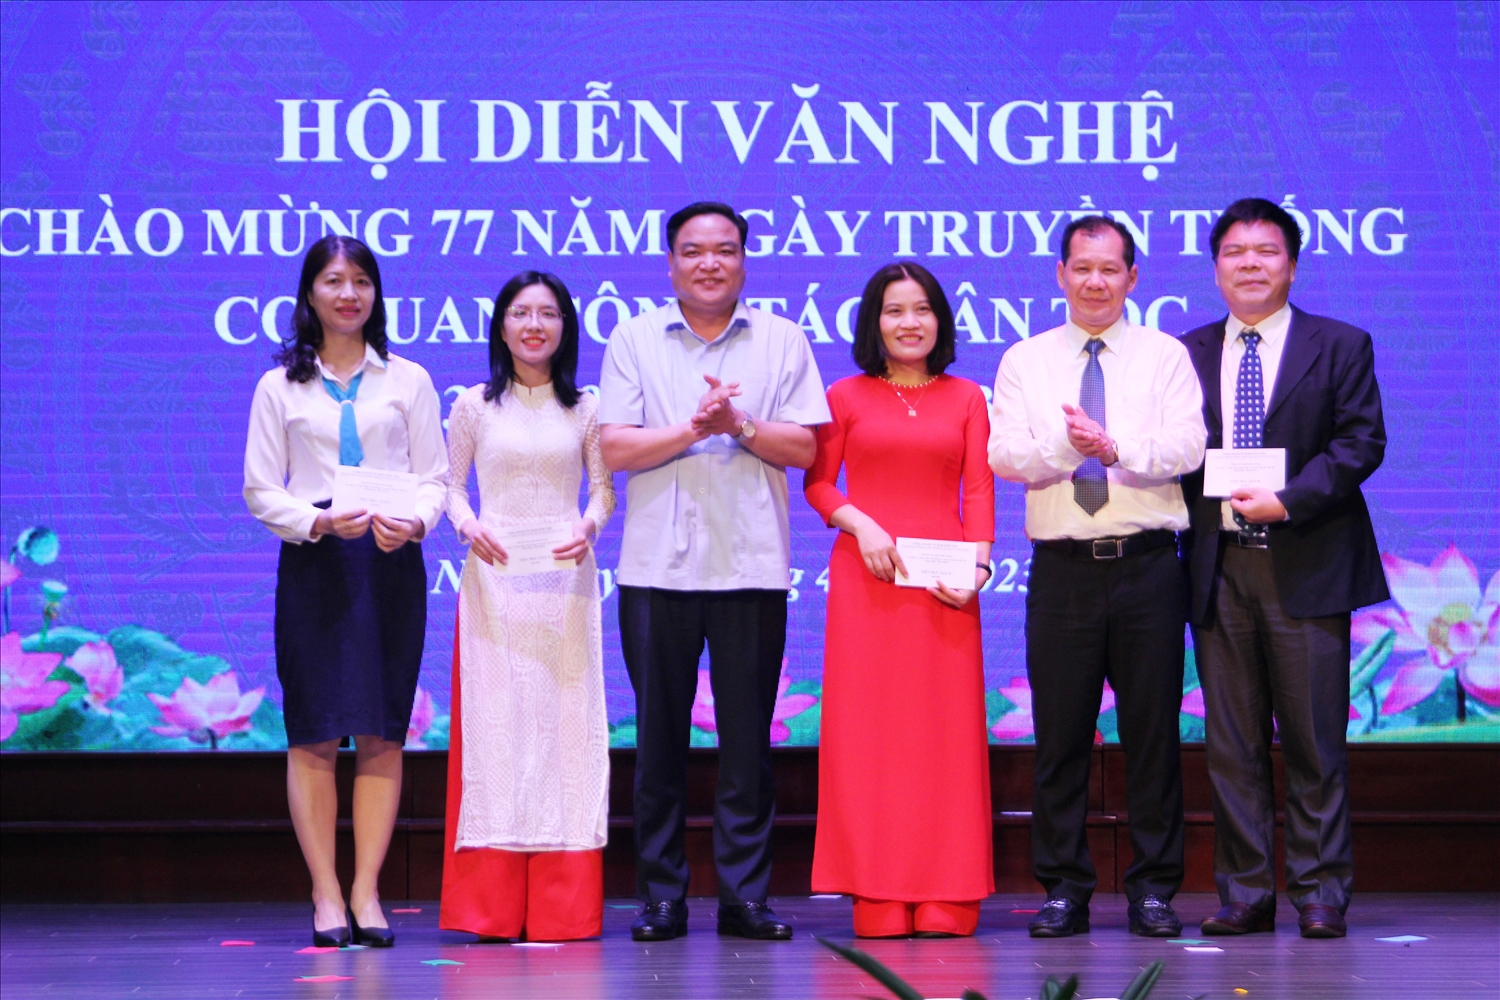 Ông Lý Bình Huy - Phó Vụ trưởng Vụ Tổ chức cán bộ và ông Hoàng Văn Tuyên - Vụ trưởng Vụ Chính sách trao giải cho các cá nhân đạt giải nội dung đọc thơ, kể chuyện 